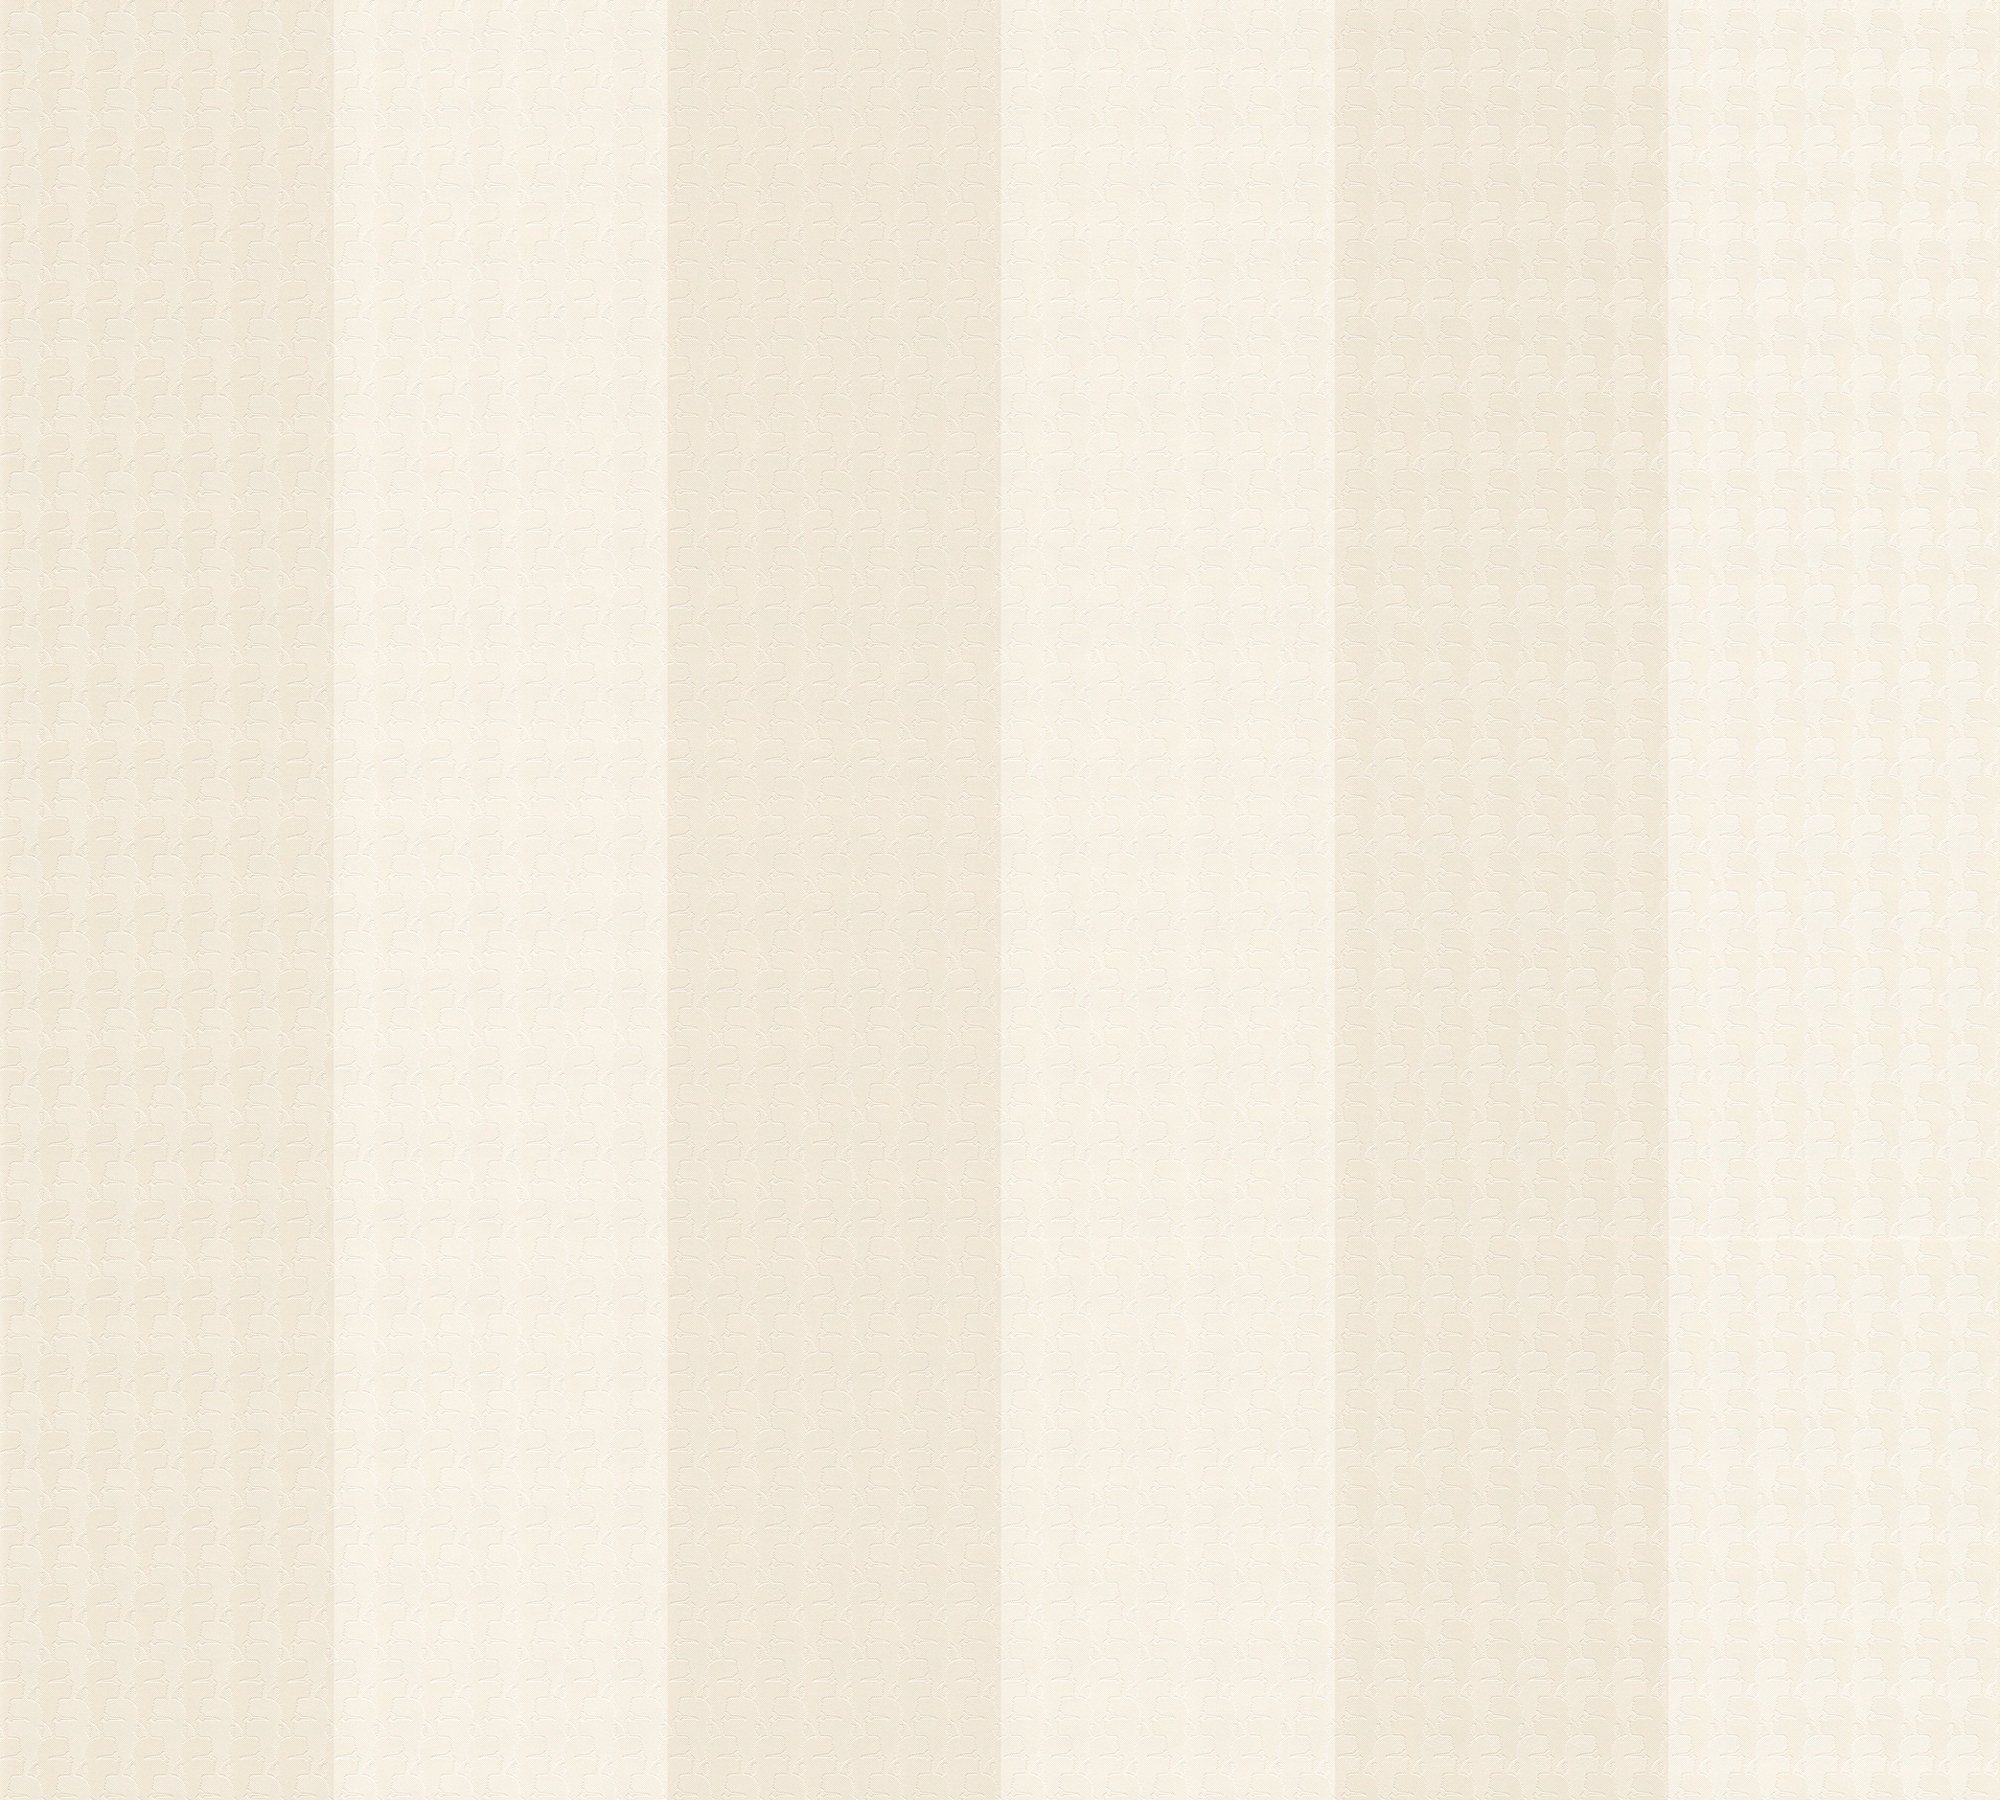 Lagerfeld Paper gestreift, Streifen, Stripes, Architects Designer Streifentapete beige/creme/weiß Vliestapete Tapete Karl